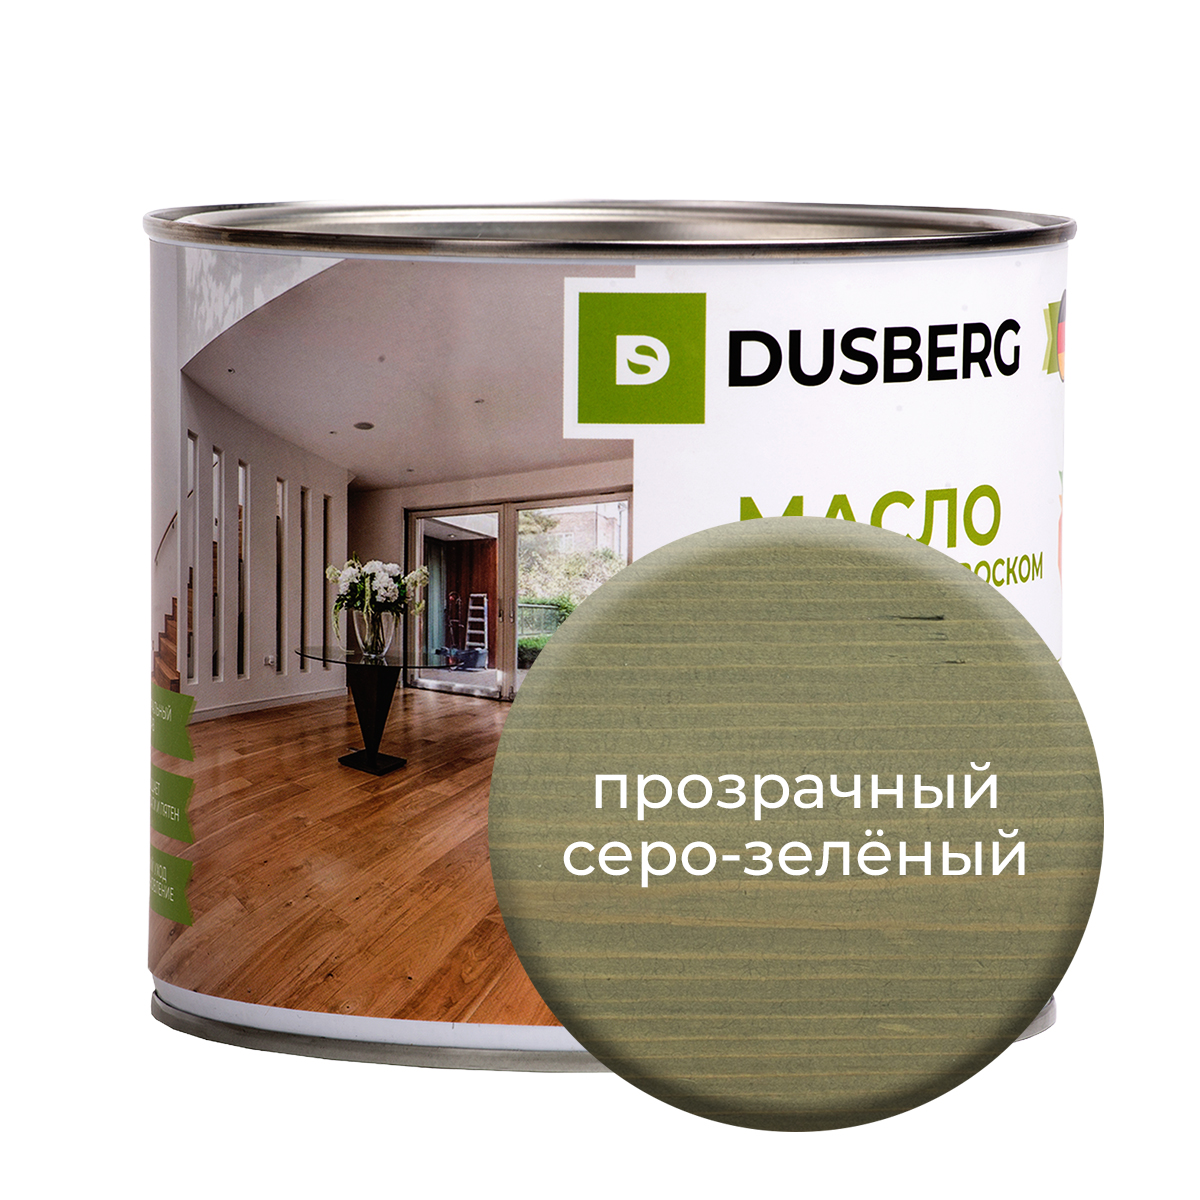 Масло Dusberg для стен на бесцветной основе, 750 мл Прозрачный серо-зеленый масло dusberg для стен на бесцветной основе 750 мл банан